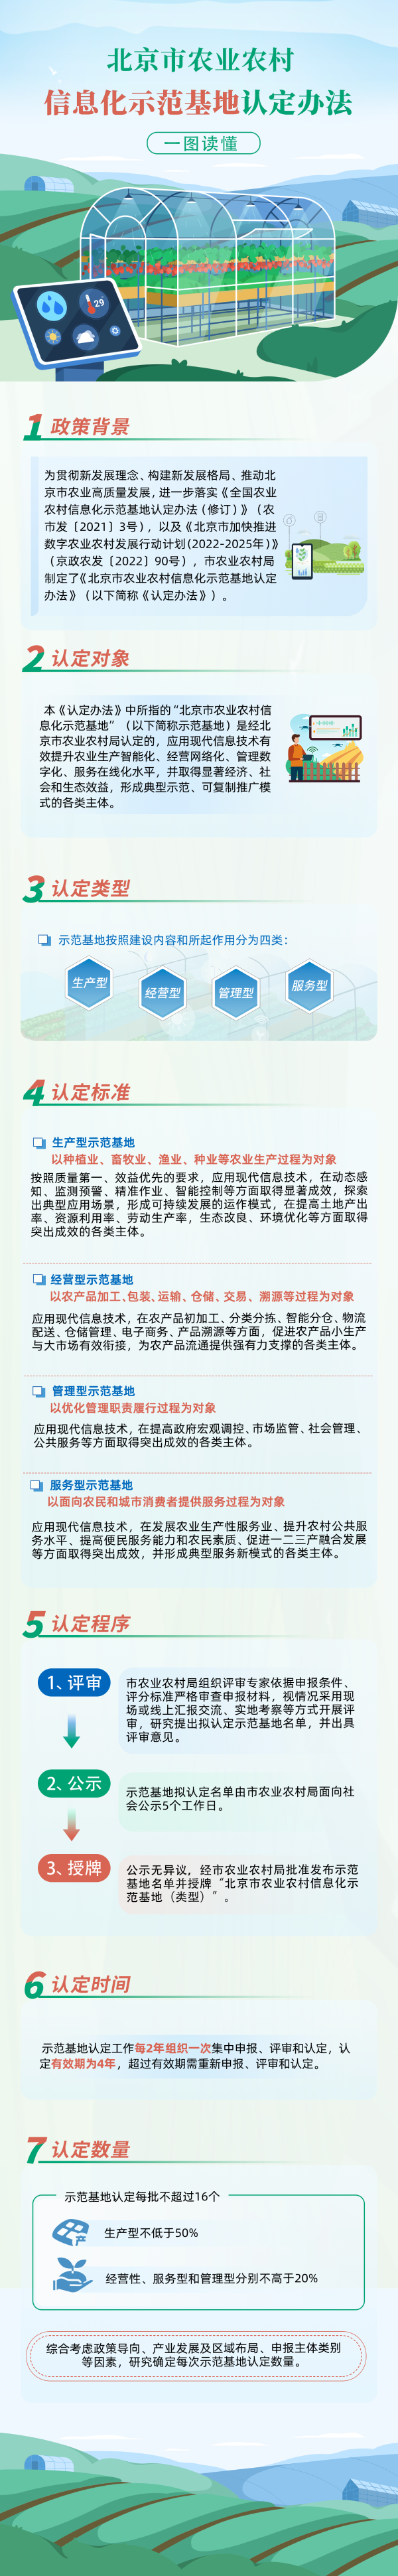 《北京市农业农村信息化示范基地认定办法》的副本